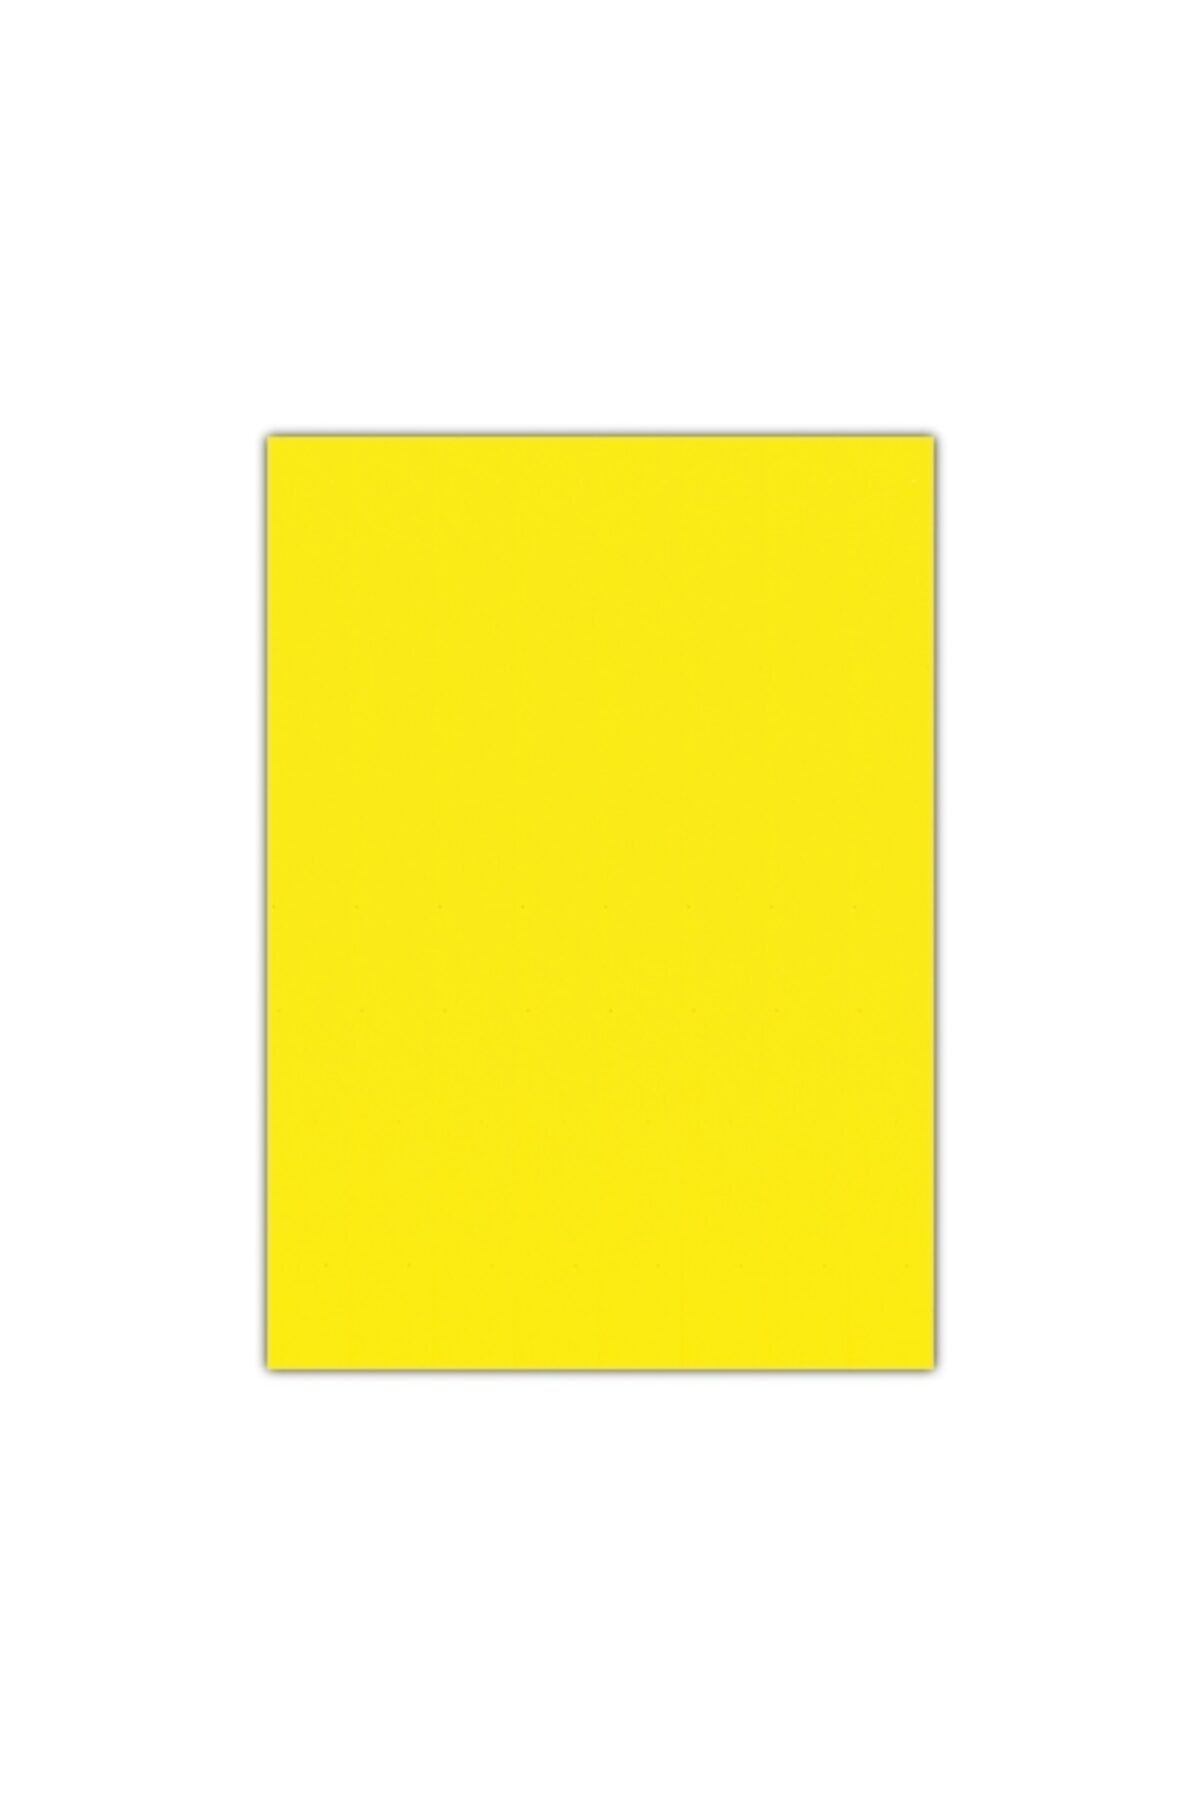 EVA Sünger Sarı Renk 200x150cm Kalınlık 1.5 Mm